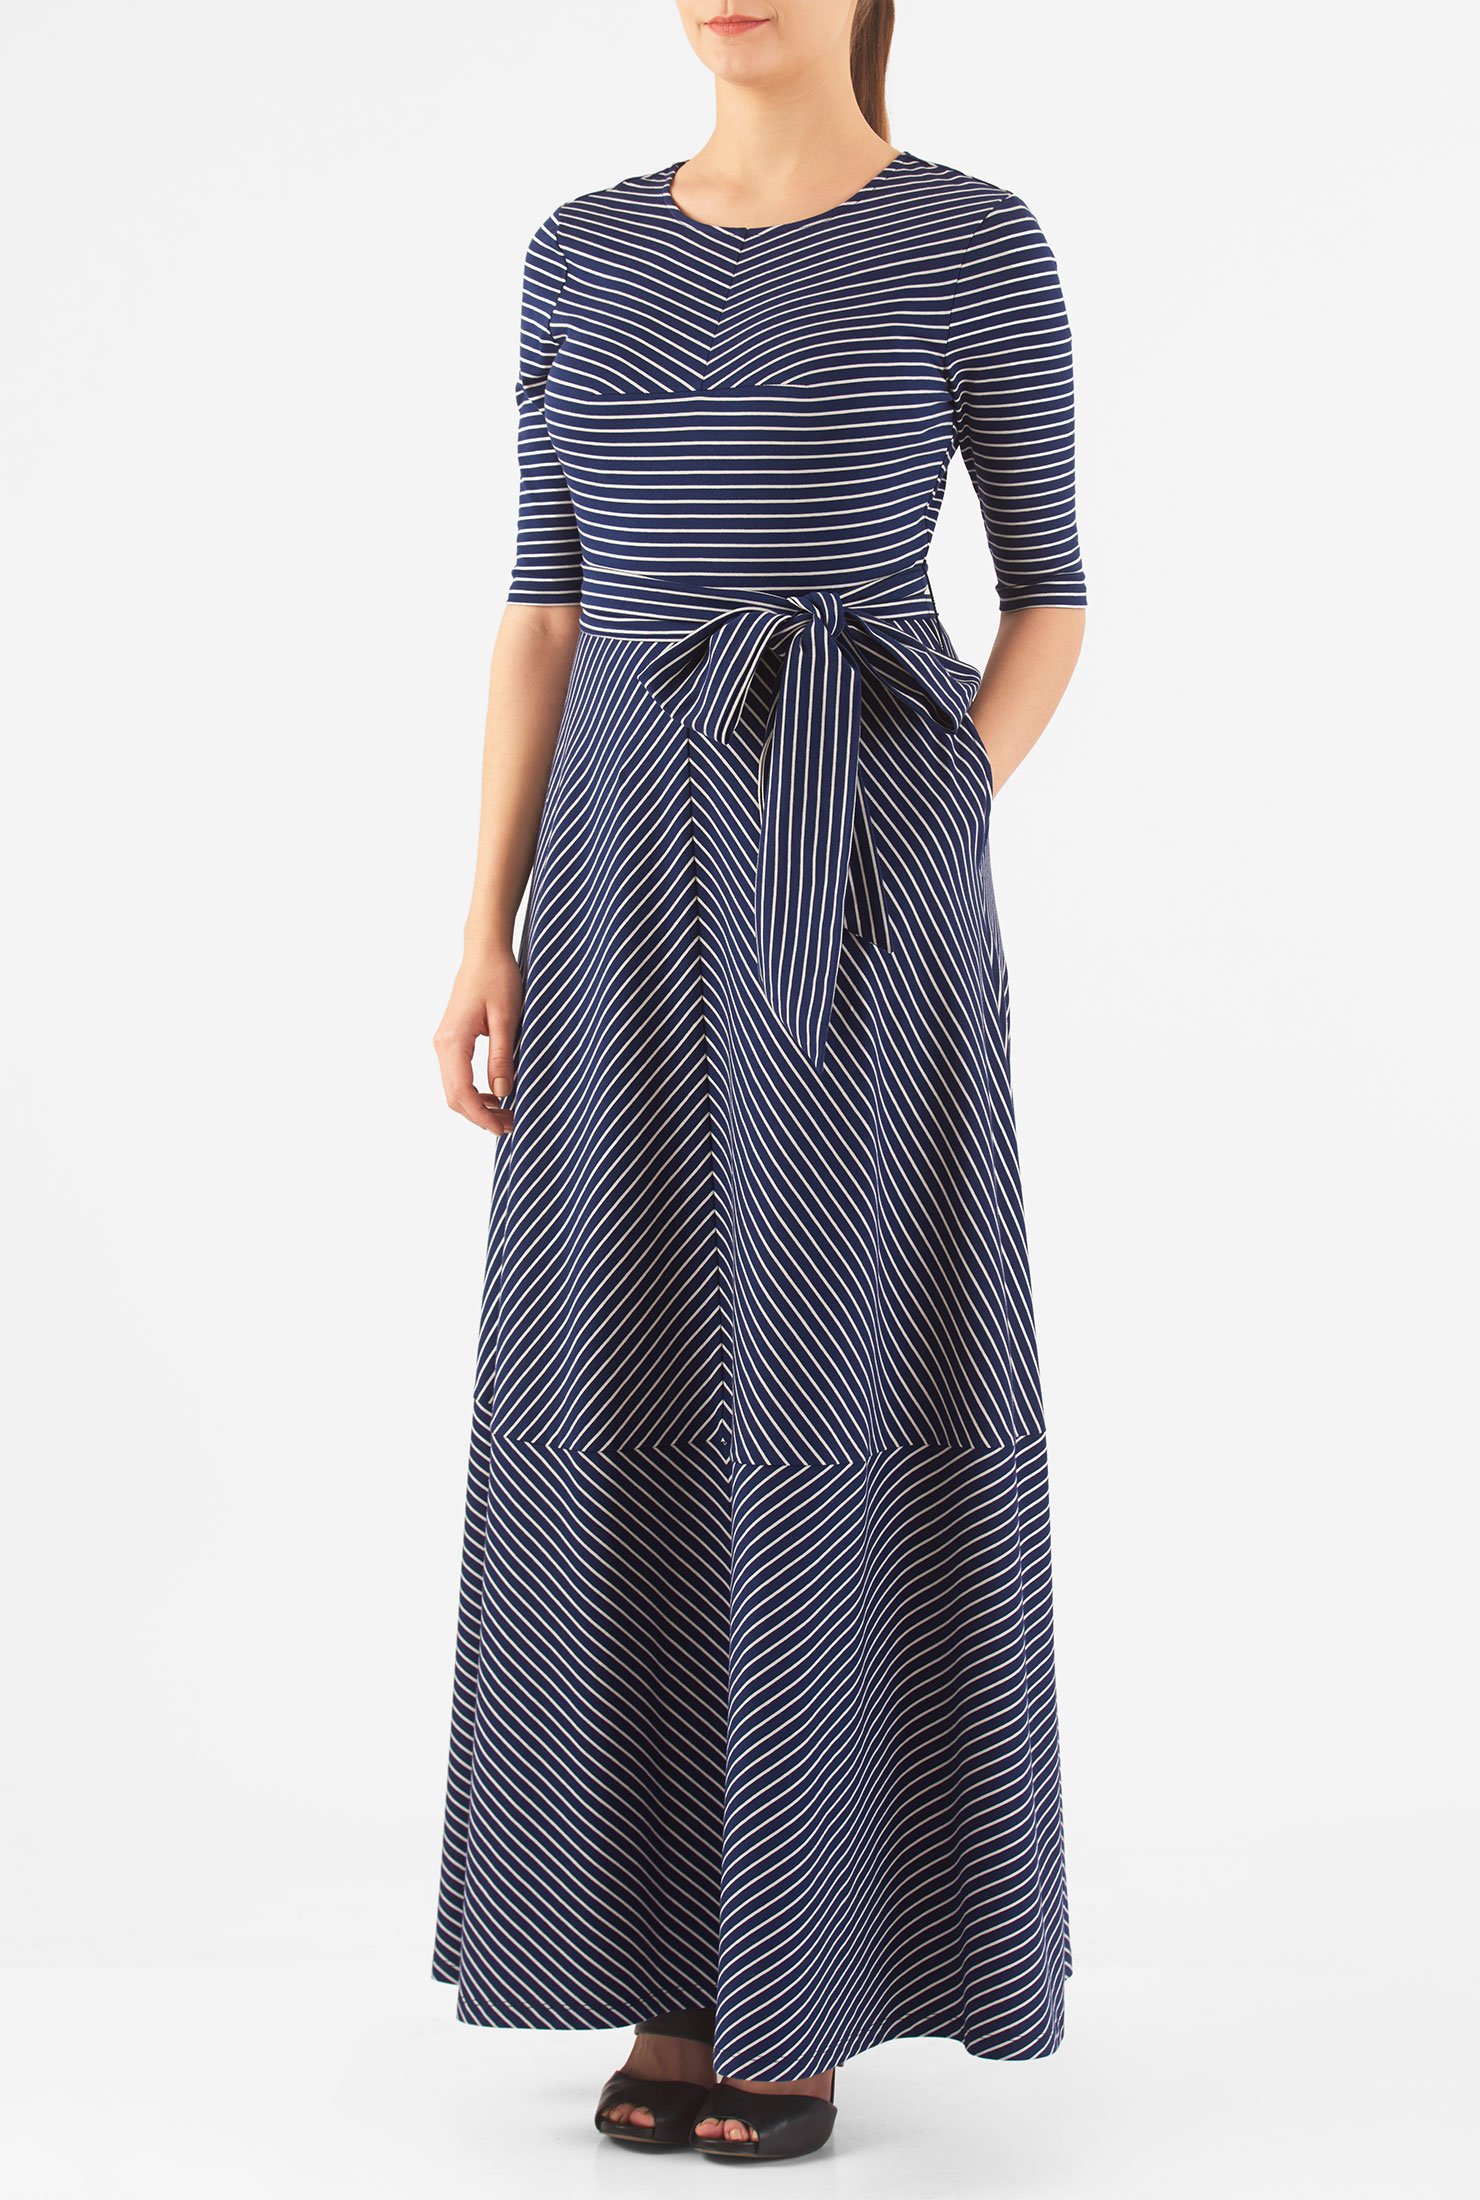 Shop Stripe cotton jersey knit maxi dress | eShakti